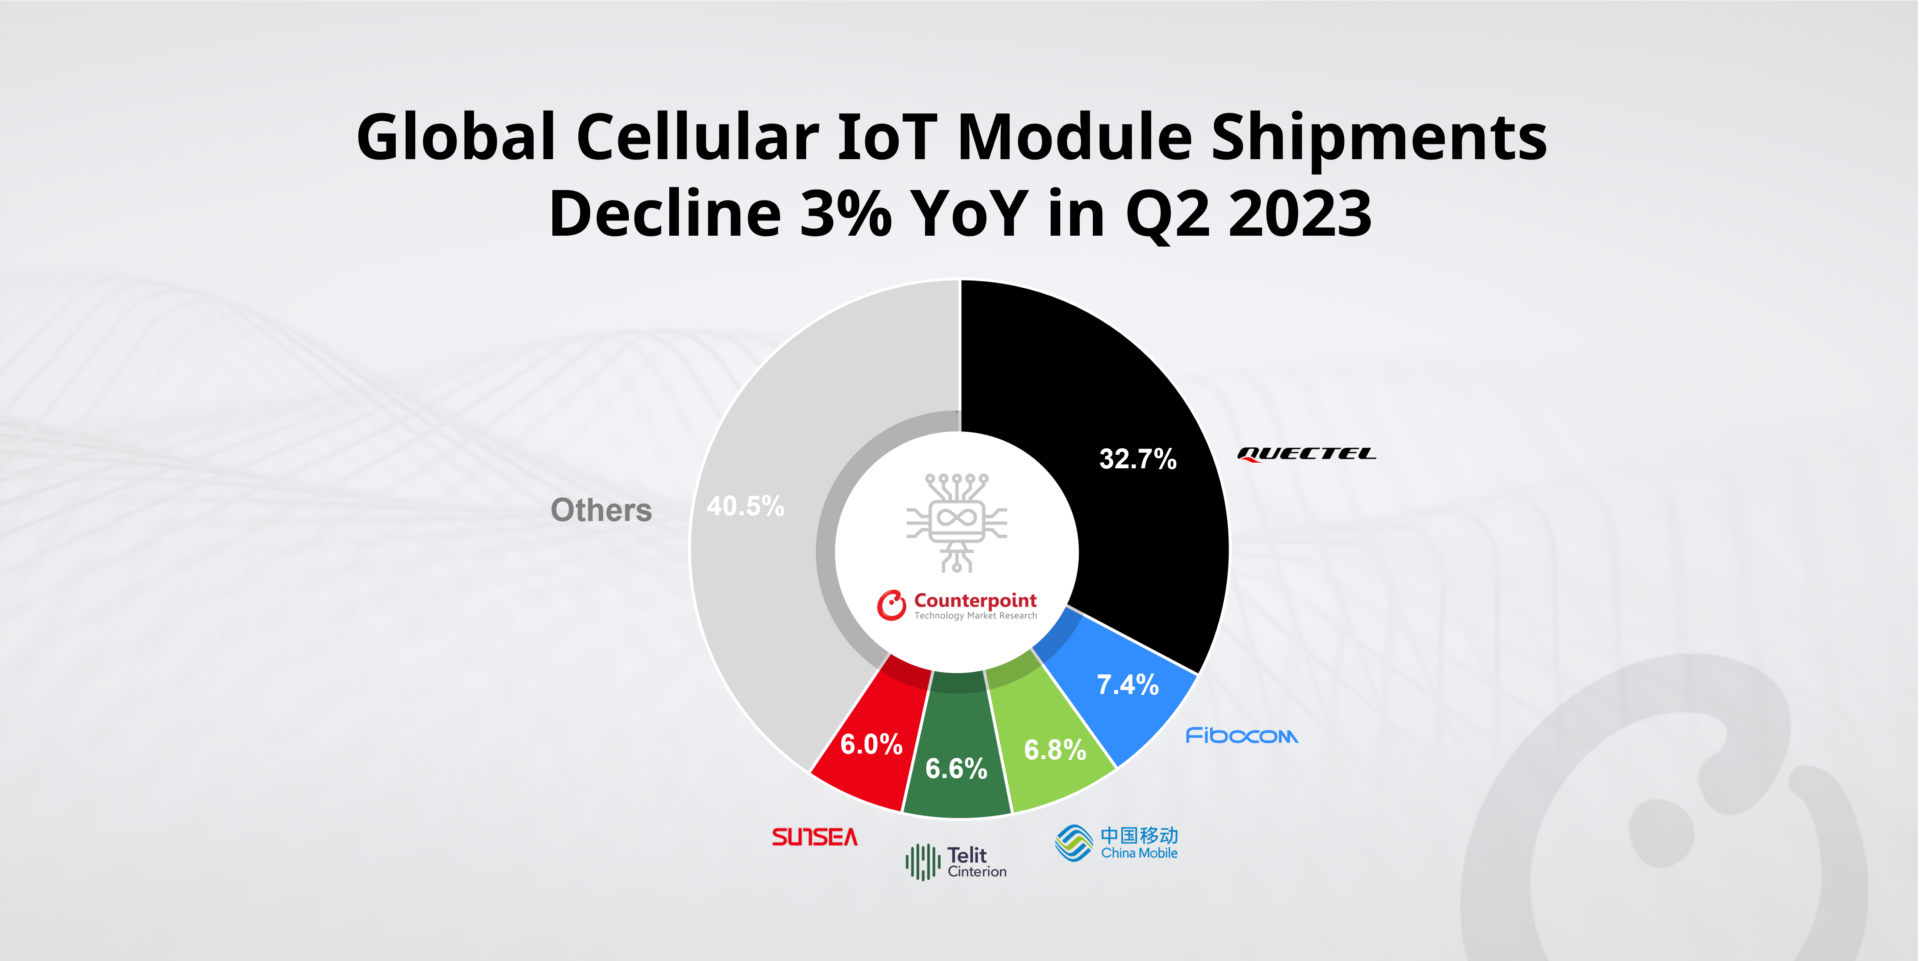 Global Cellular IoT Module Shipments Decline 3% YoY in Q2 2023